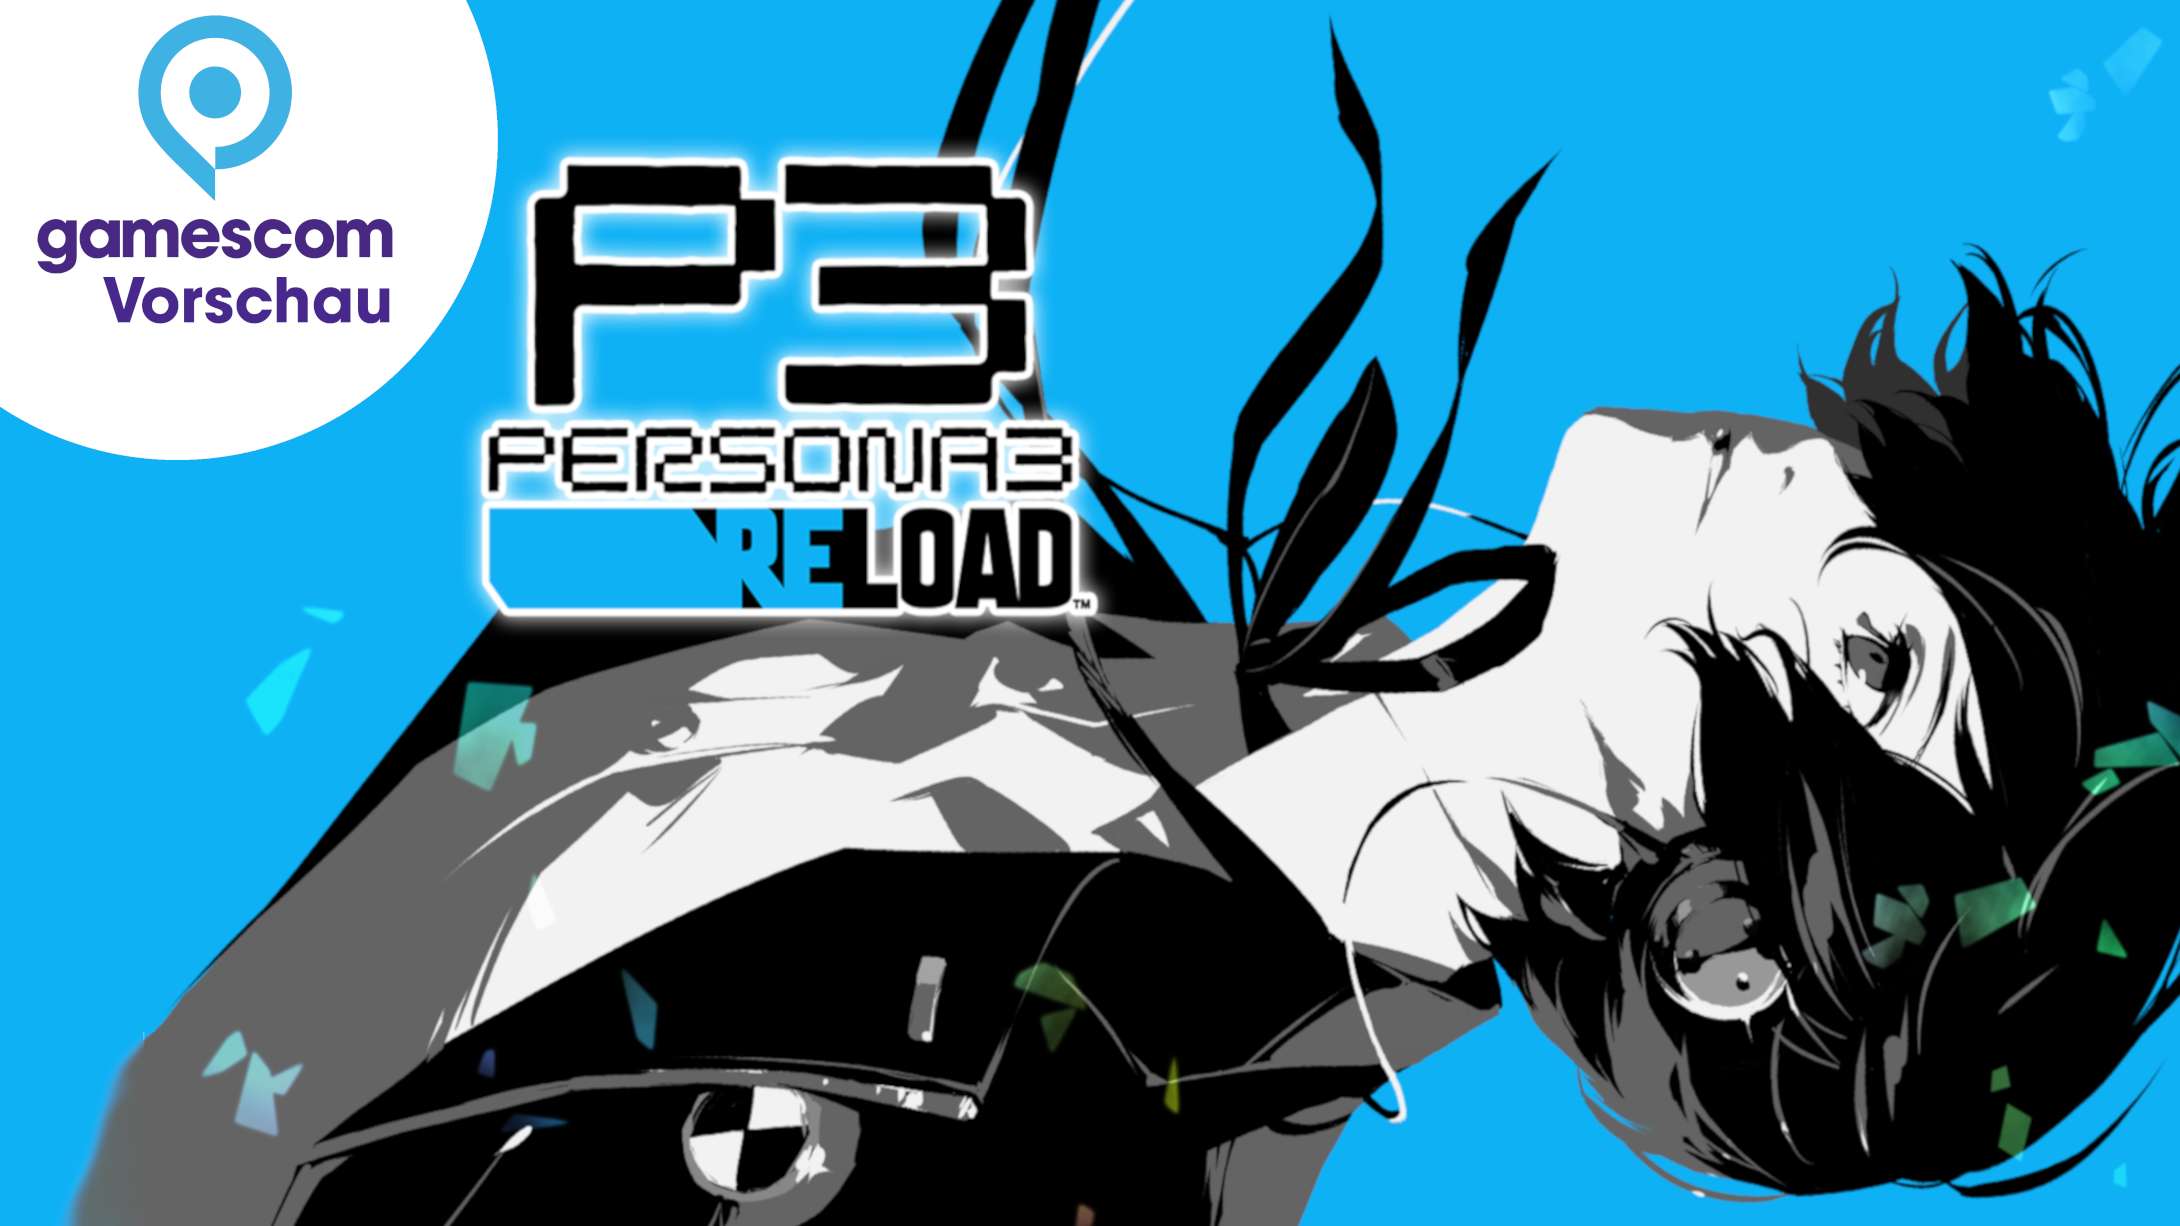 Gamescom Persona 3 Reload